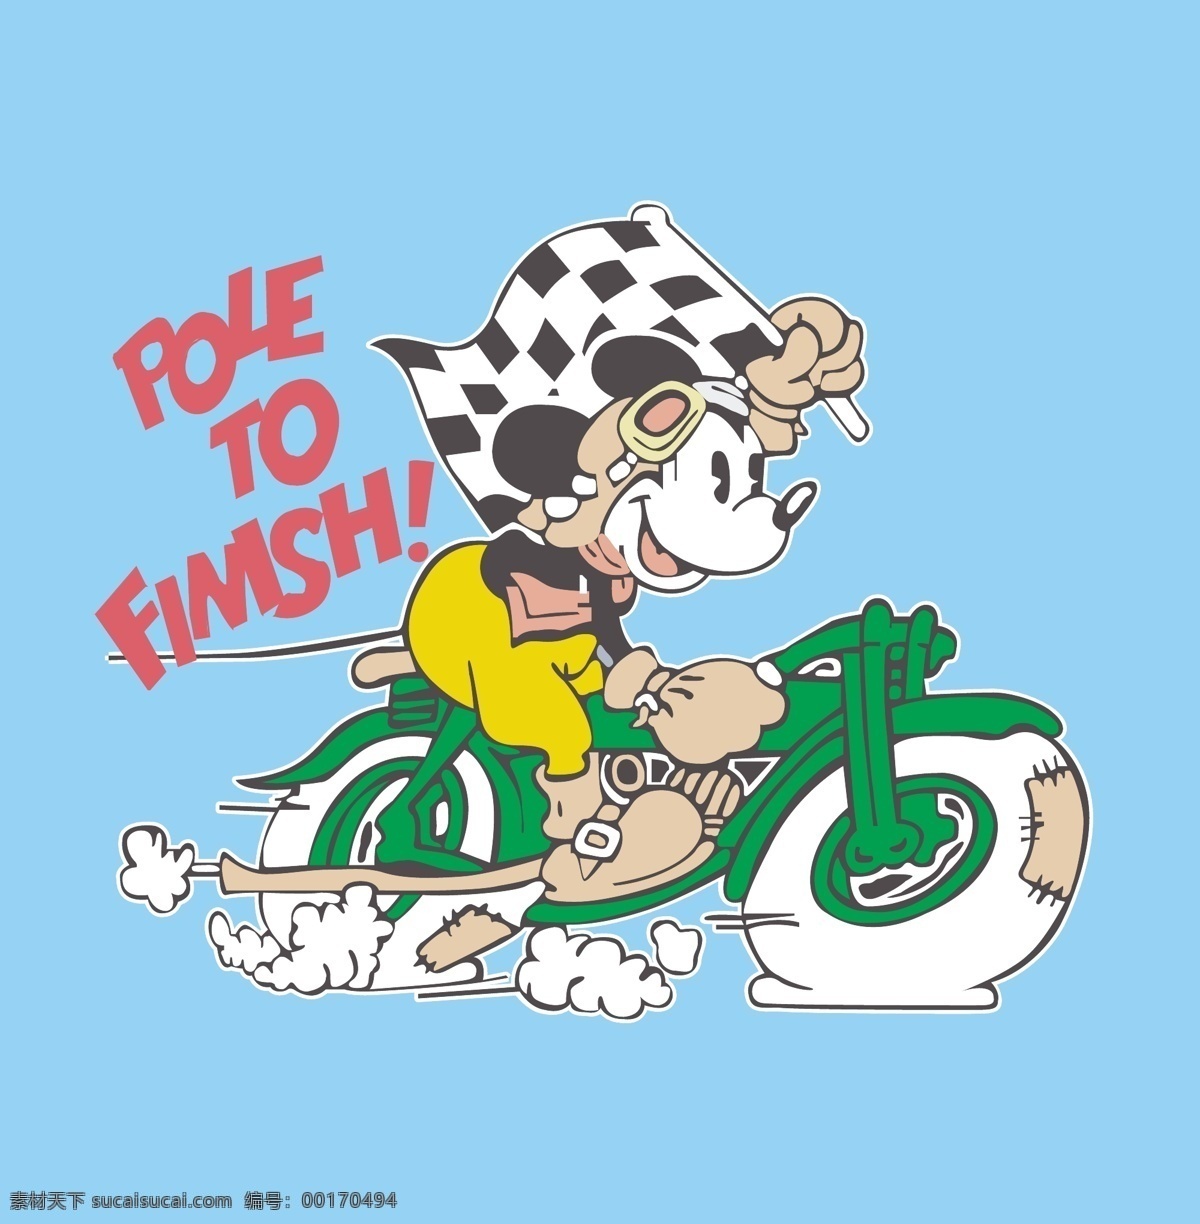 卡通米老鼠 米奇 迪士尼图案 米老鼠 卡通老鼠 骑摩托车 赛车摩托车 卡通 卡通设计